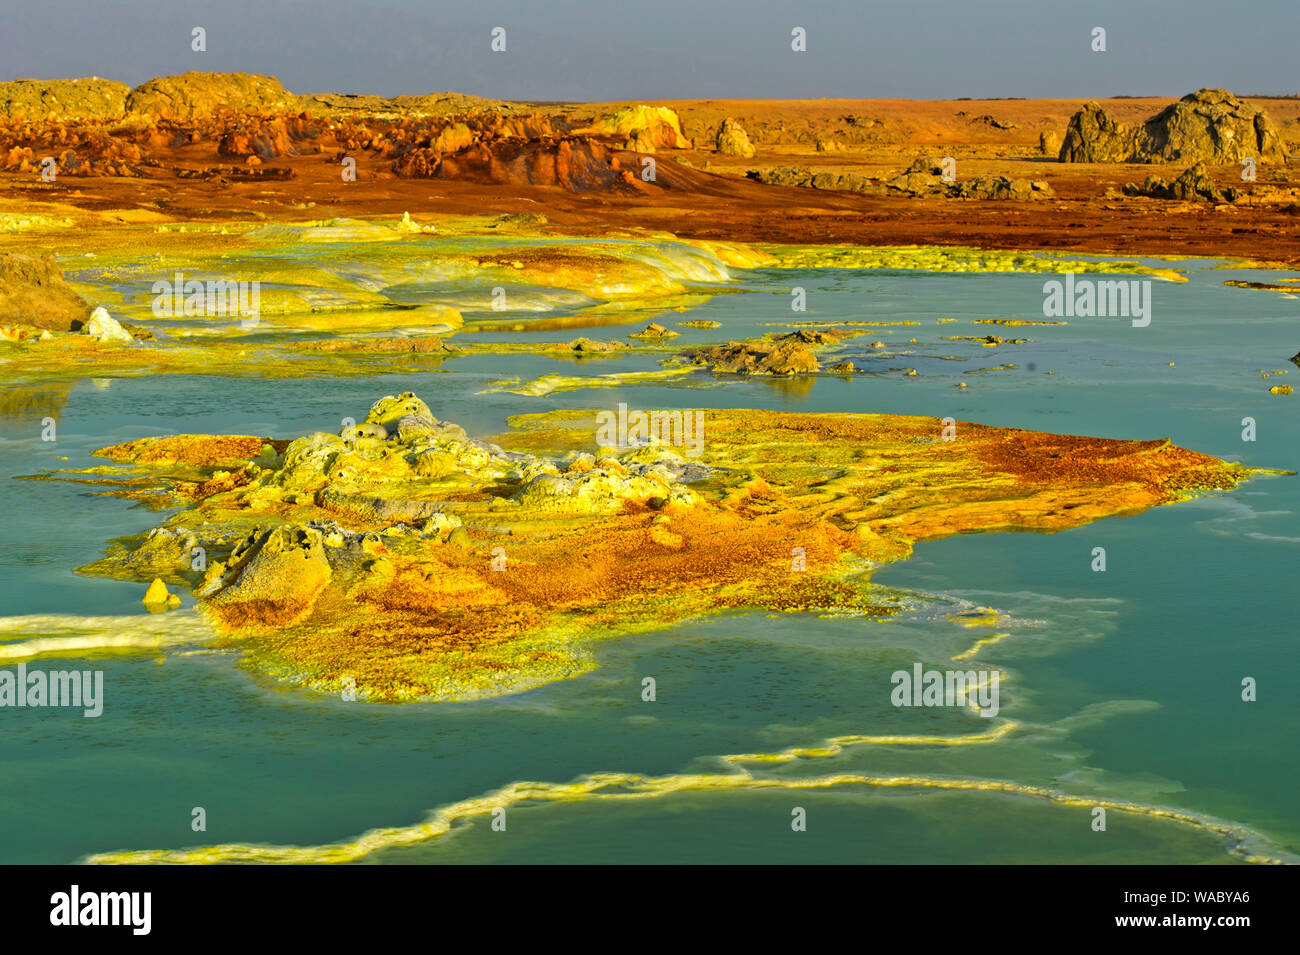 Sulfure de formations rocheuses dans une saumure acide le champ géothermique de piscine, de dépression Danakil, Dallol, Triangle Afar, Ethiopie Banque D'Images